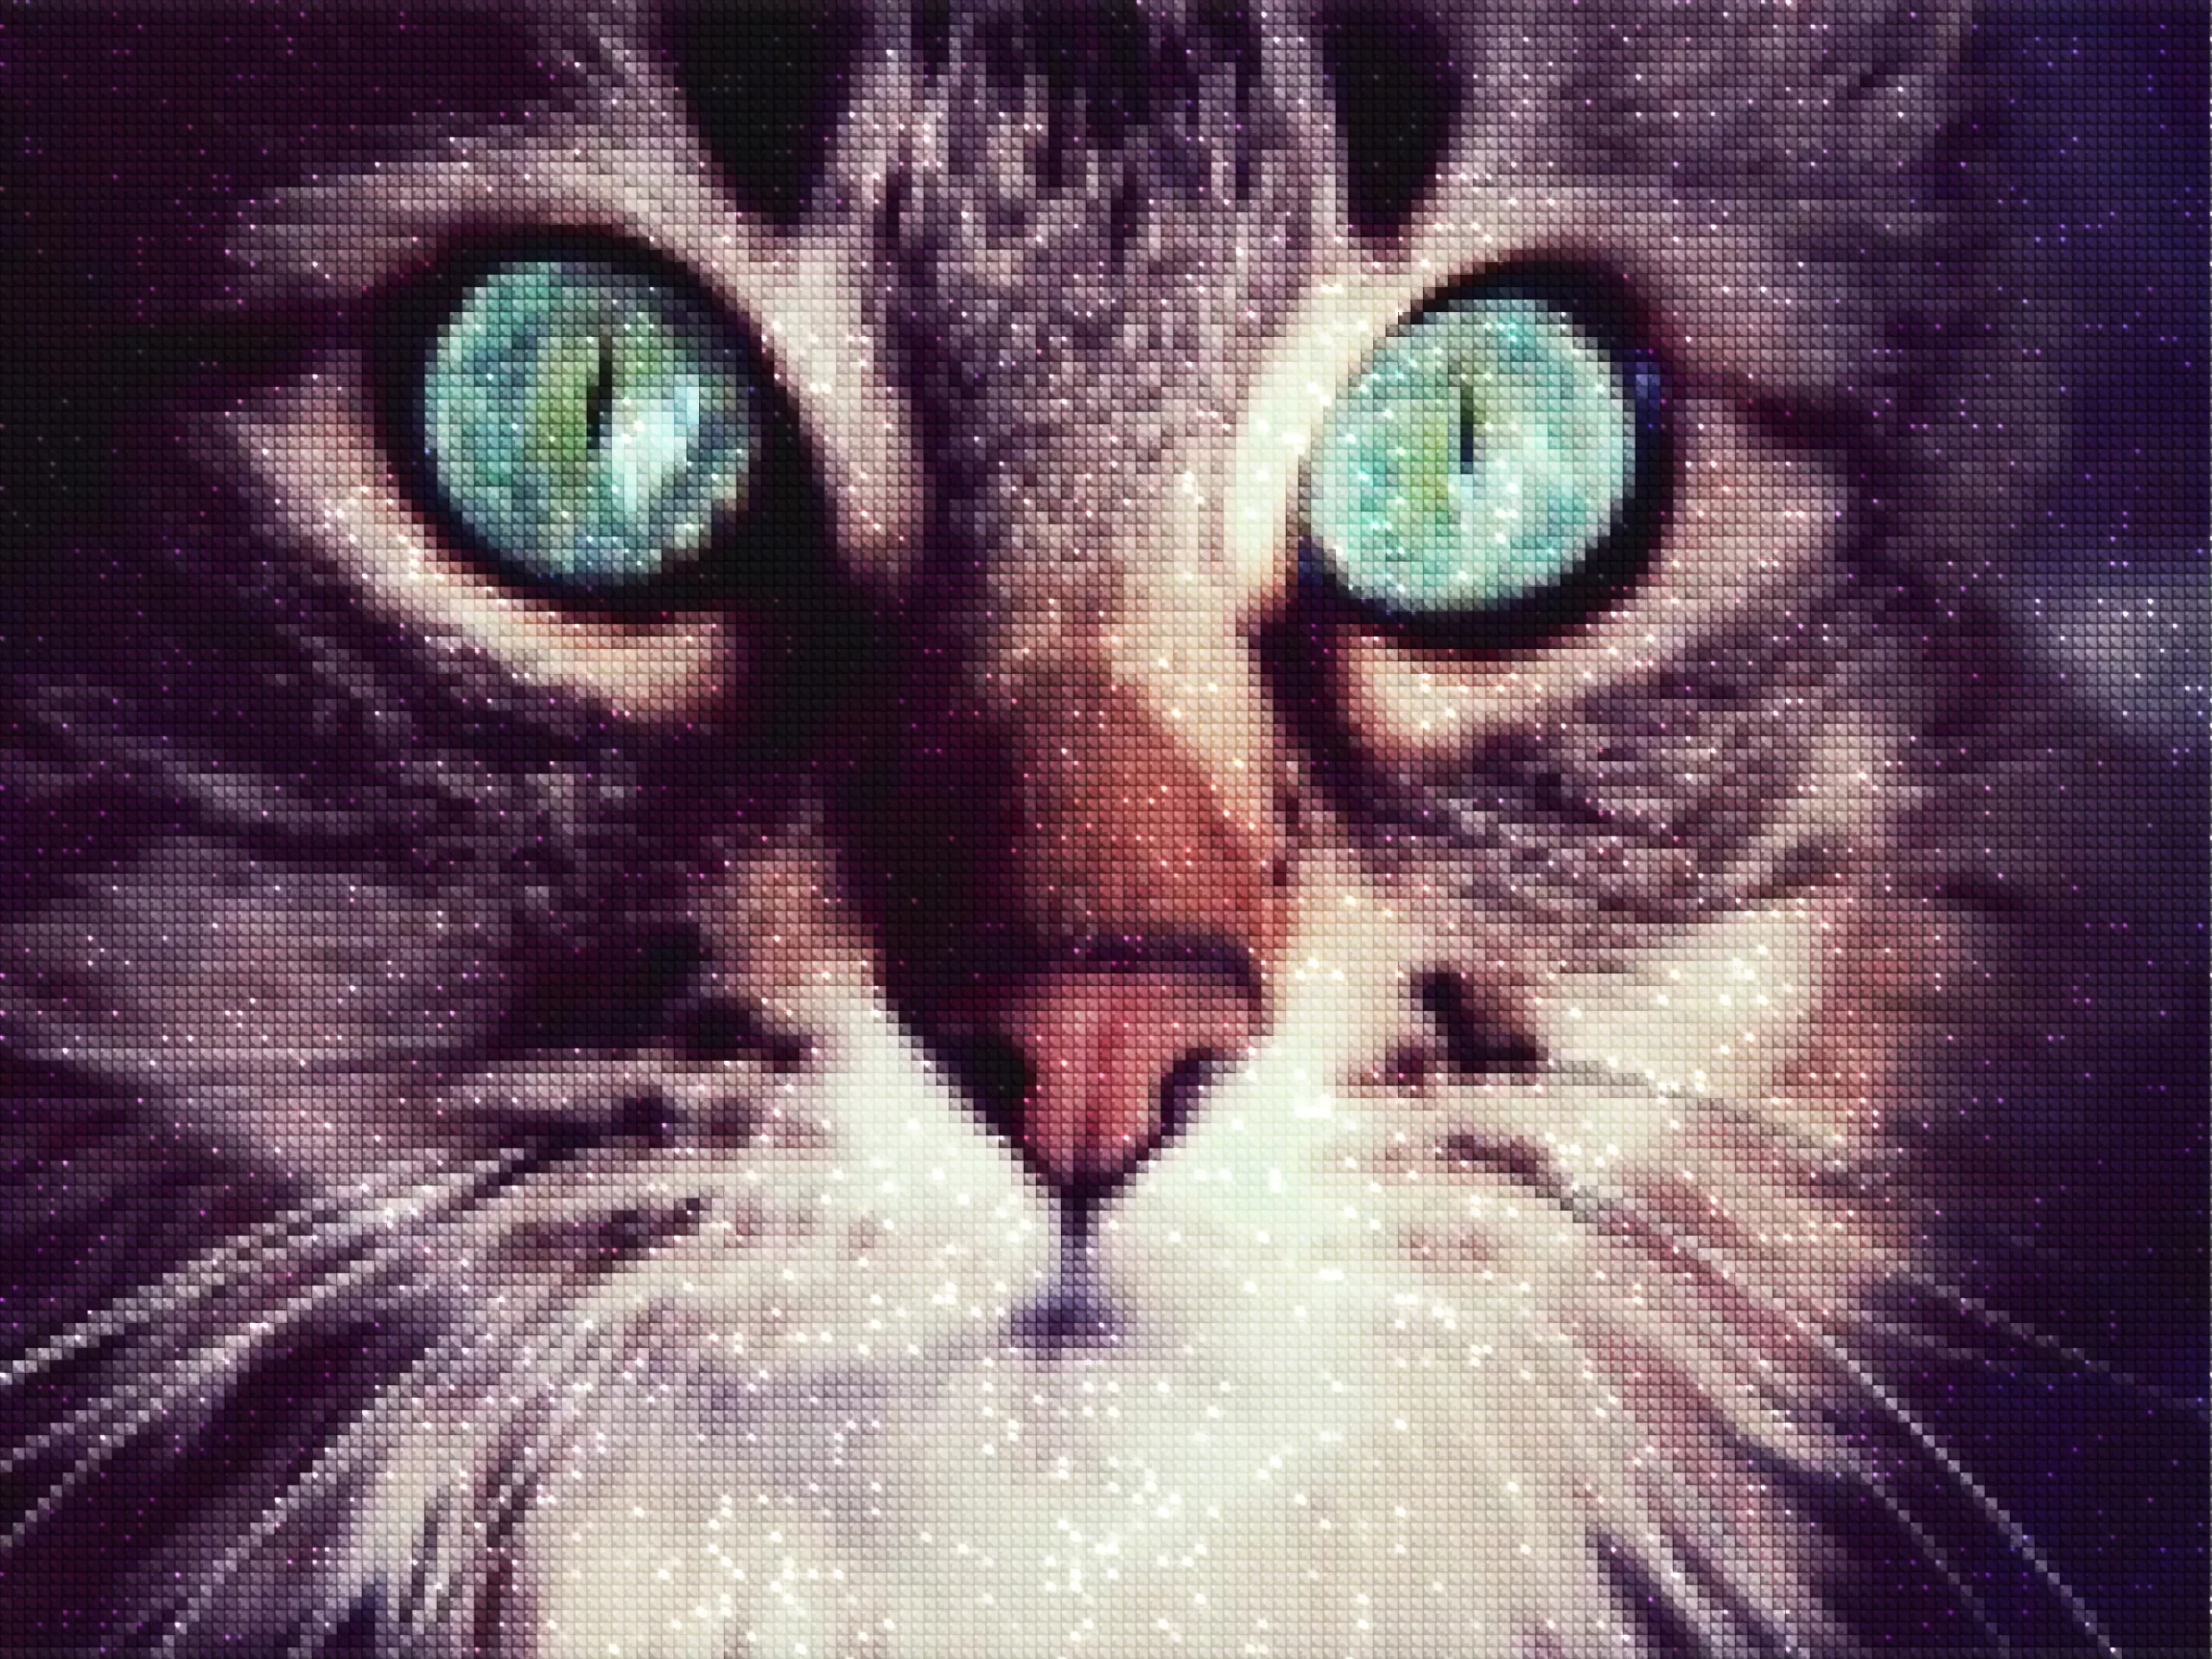 Diamonds-Wizard-Diamond-Painting-Kits-Animals-Cat-Enchanted Türkis Eyes-diamonds.webp